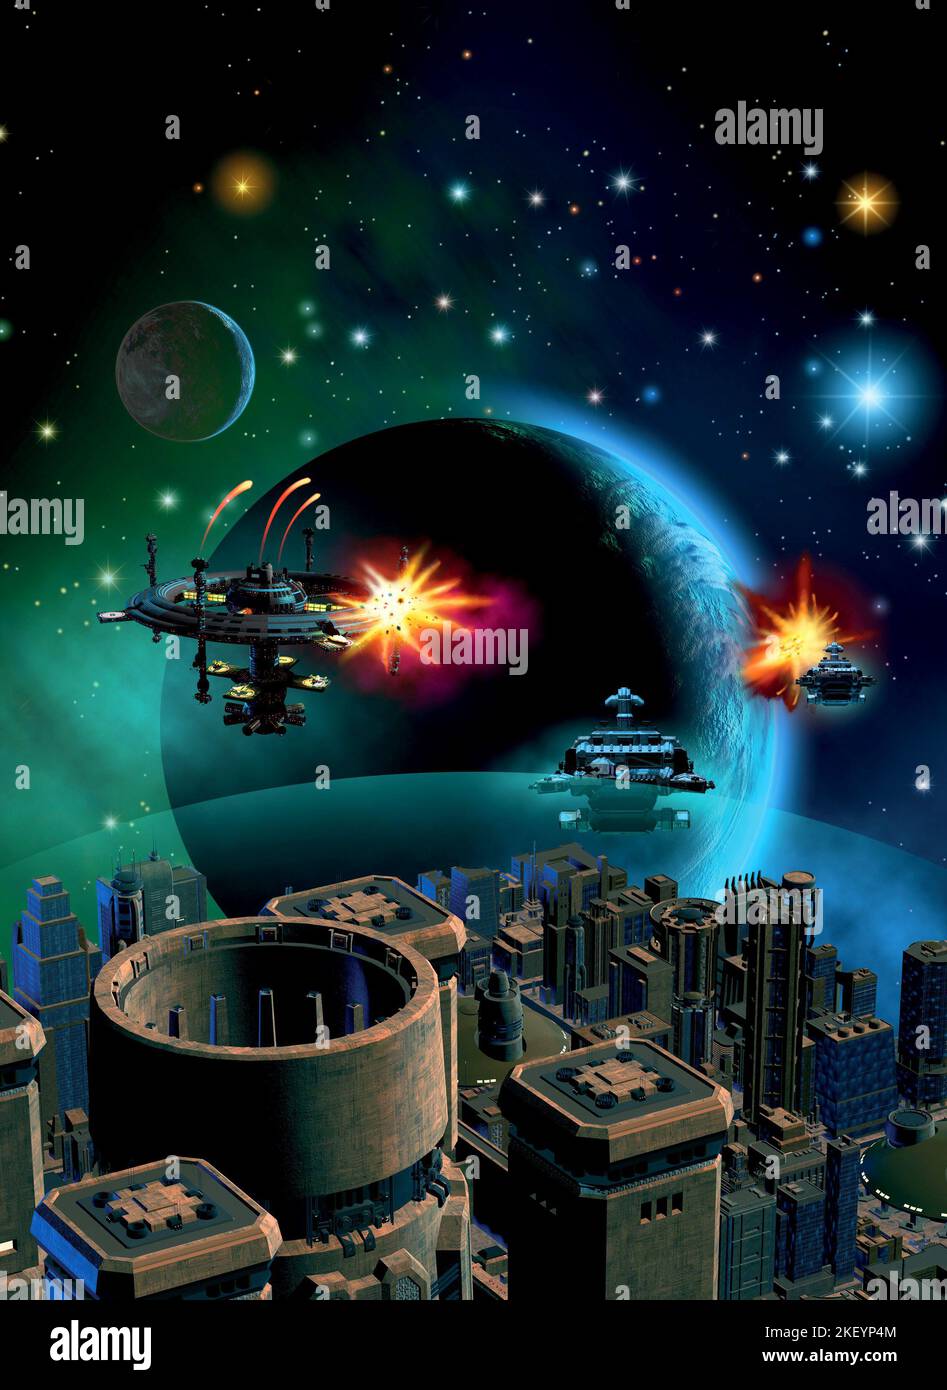 bataille spatiale autour d'une planète extraterrestre, station spatiale, 3d illustration Banque D'Images